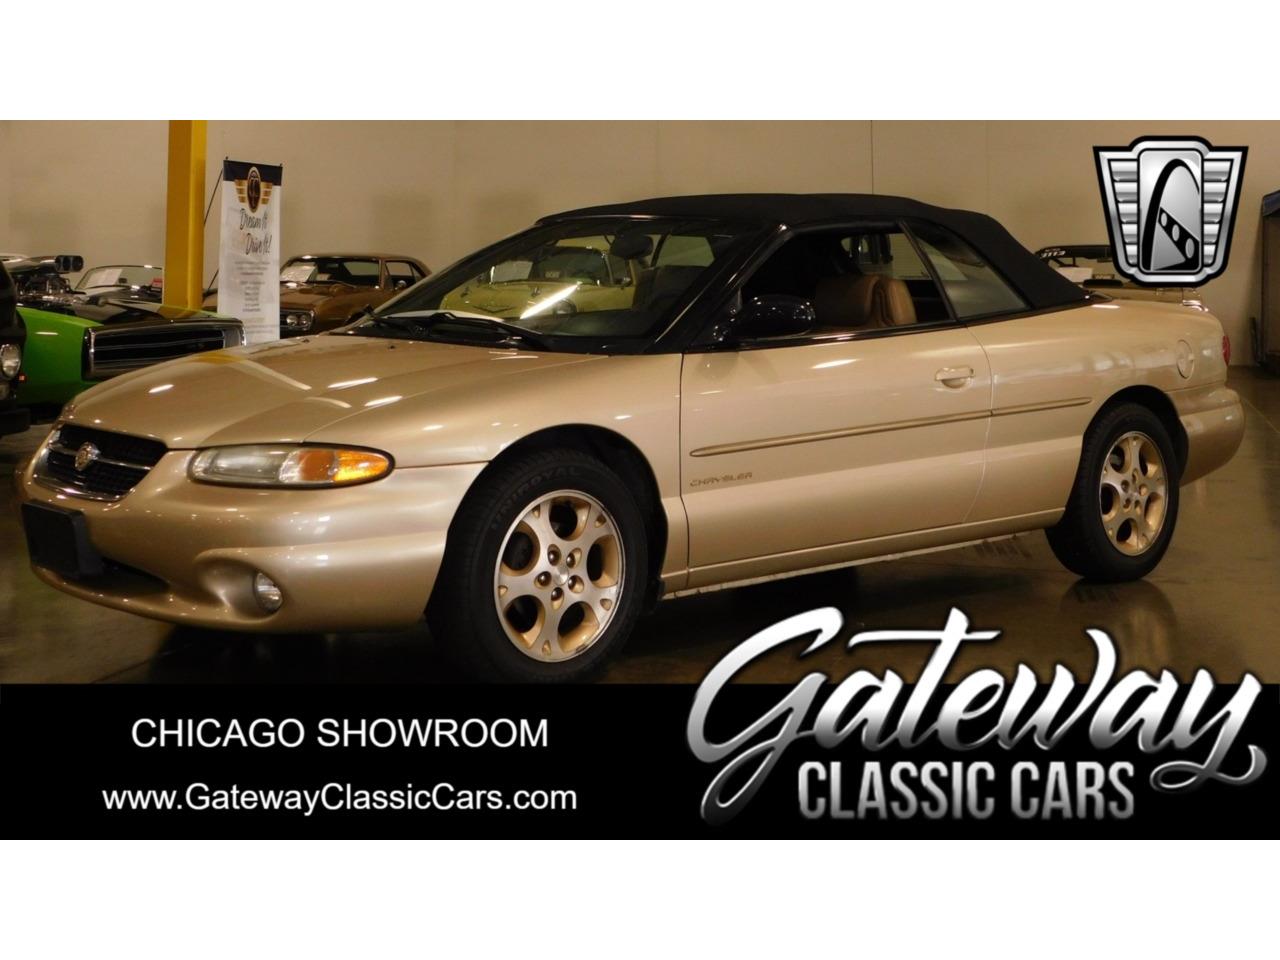 For Sale: 1998 Chrysler Sebring in O'Fallon, Illinois for sale in O Fallon, IL